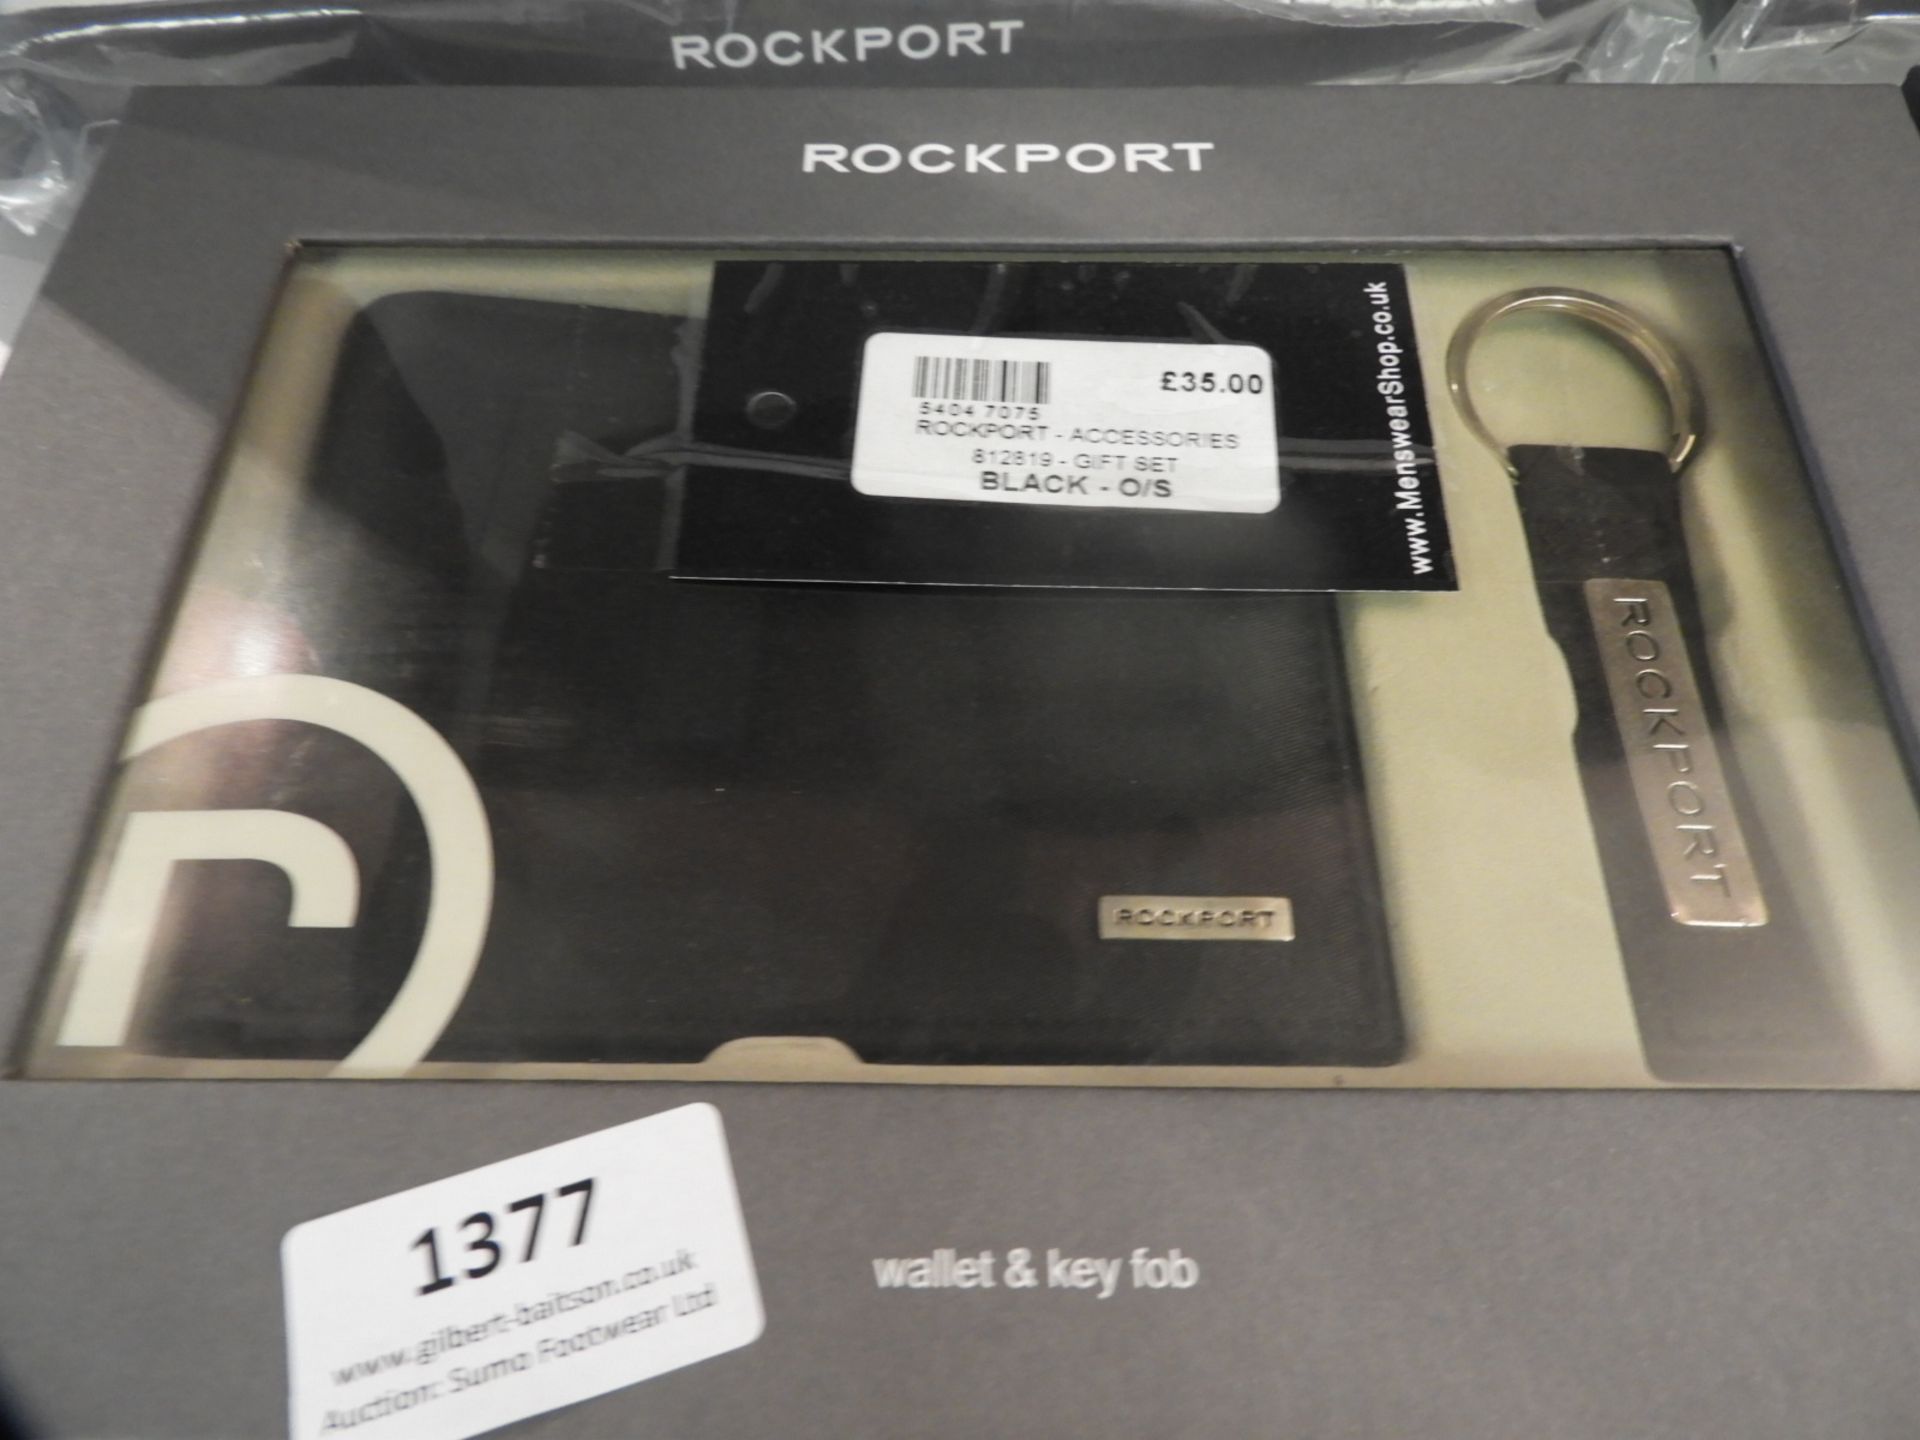 *Rockport Wallet & Key Fob Gift Pack